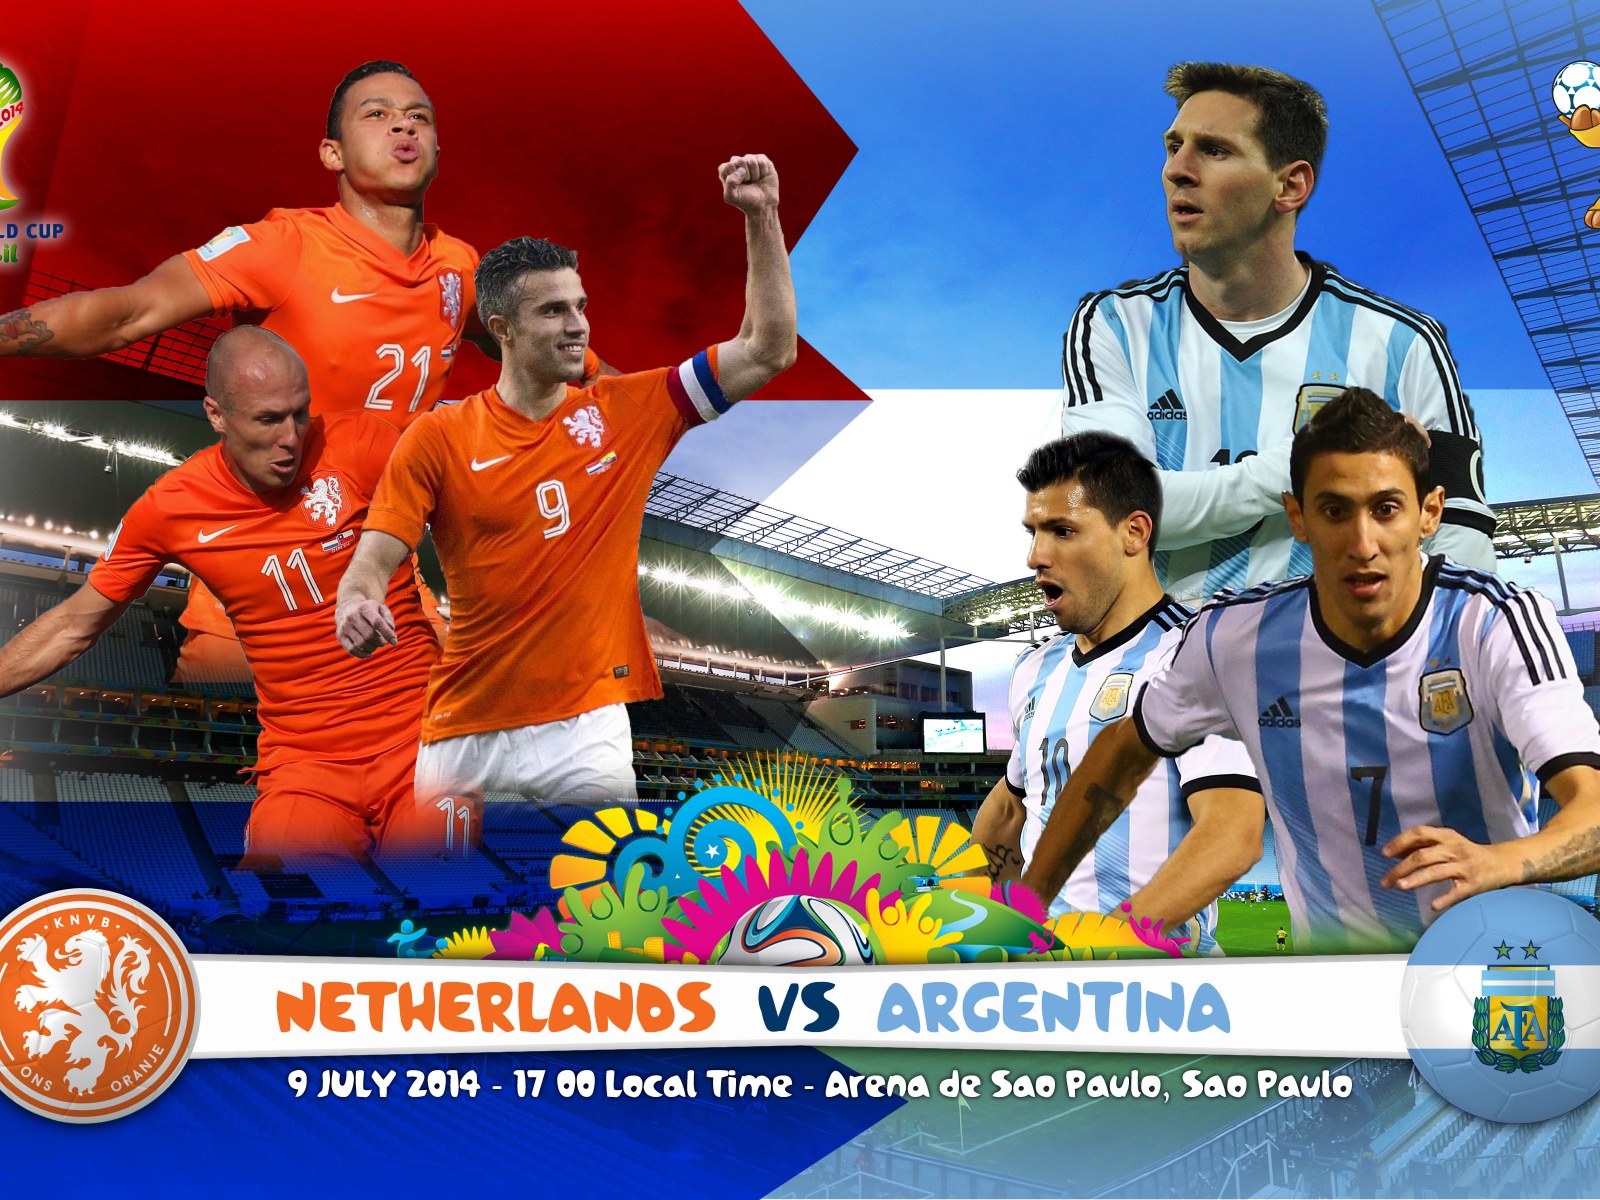 Netherlands Vs Argentina Semi-finals